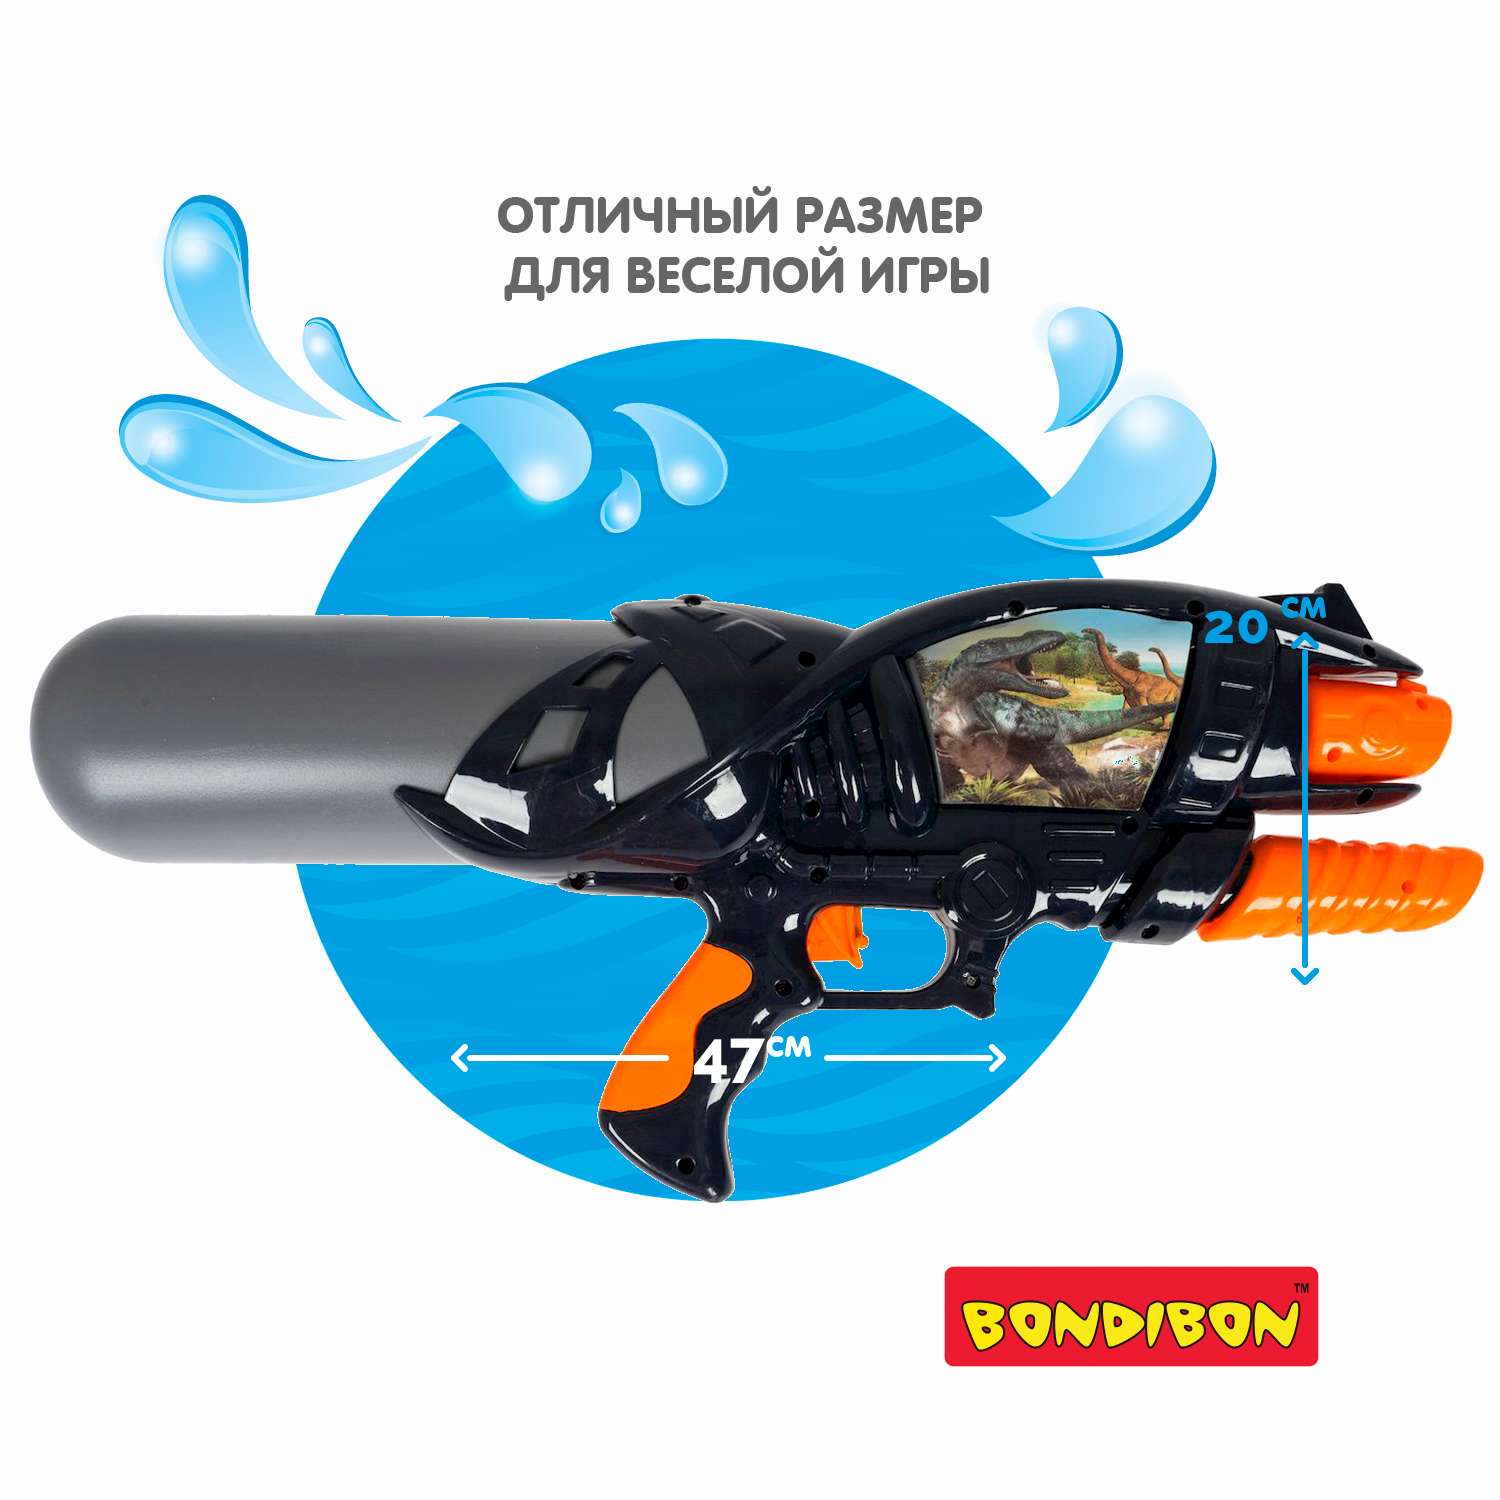 Водный пистолет с помпой BONDIBON черный 1100 мл стрельба 6-8 метров серия Наше Лето - фото 4